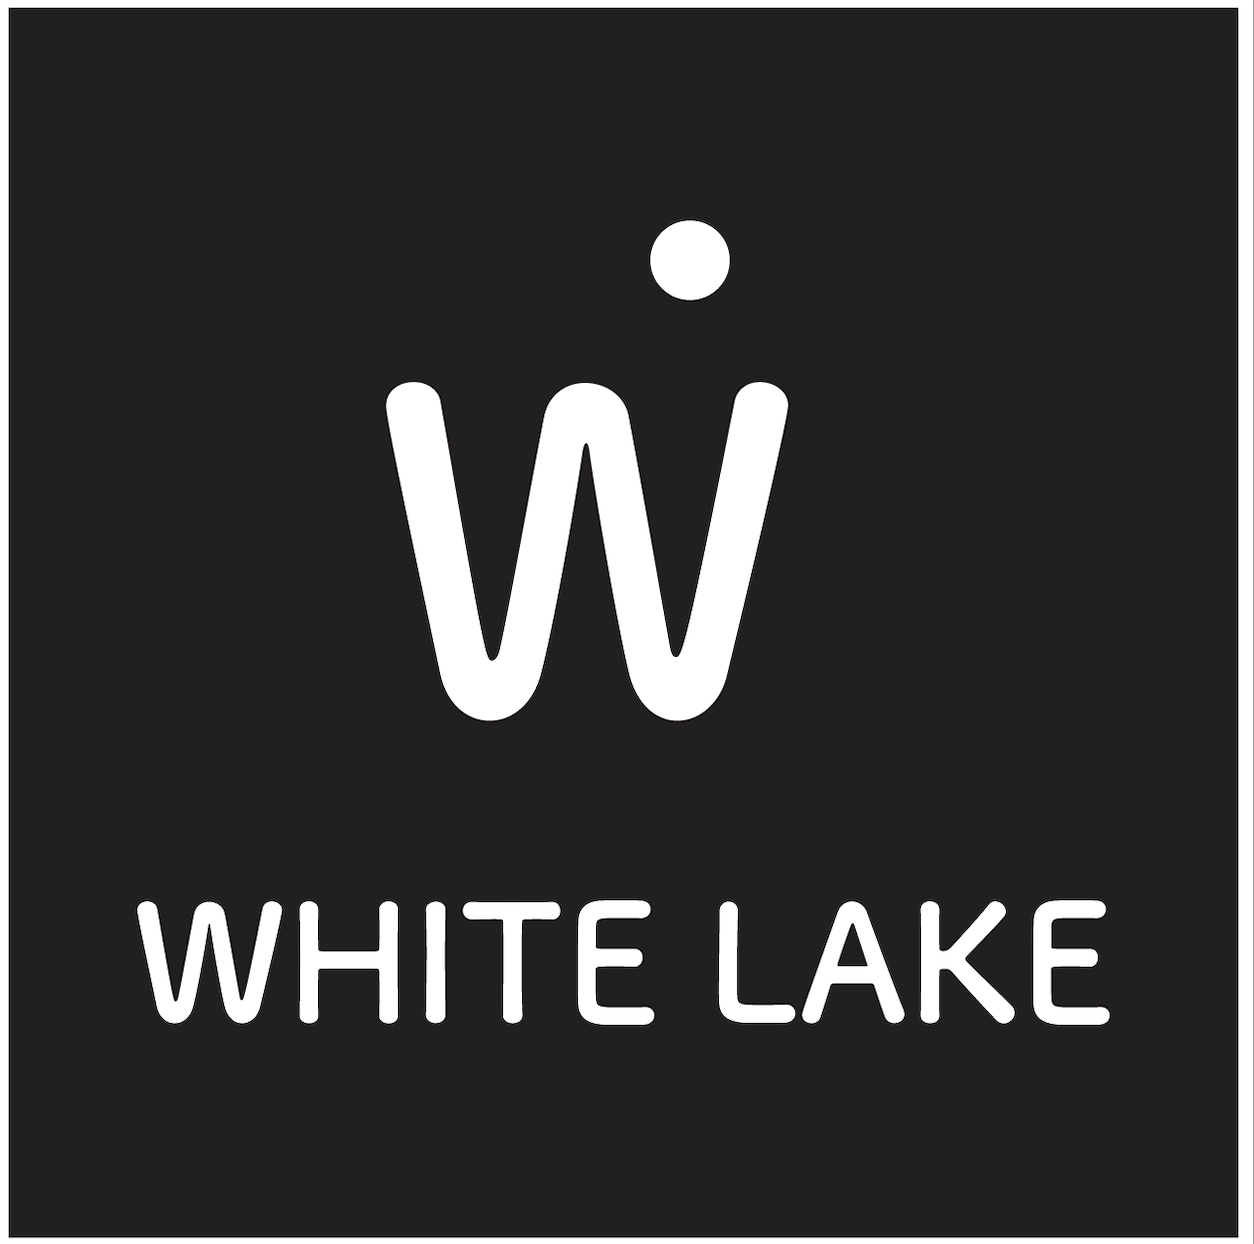 WhiteLake | iPhone & iPad apps